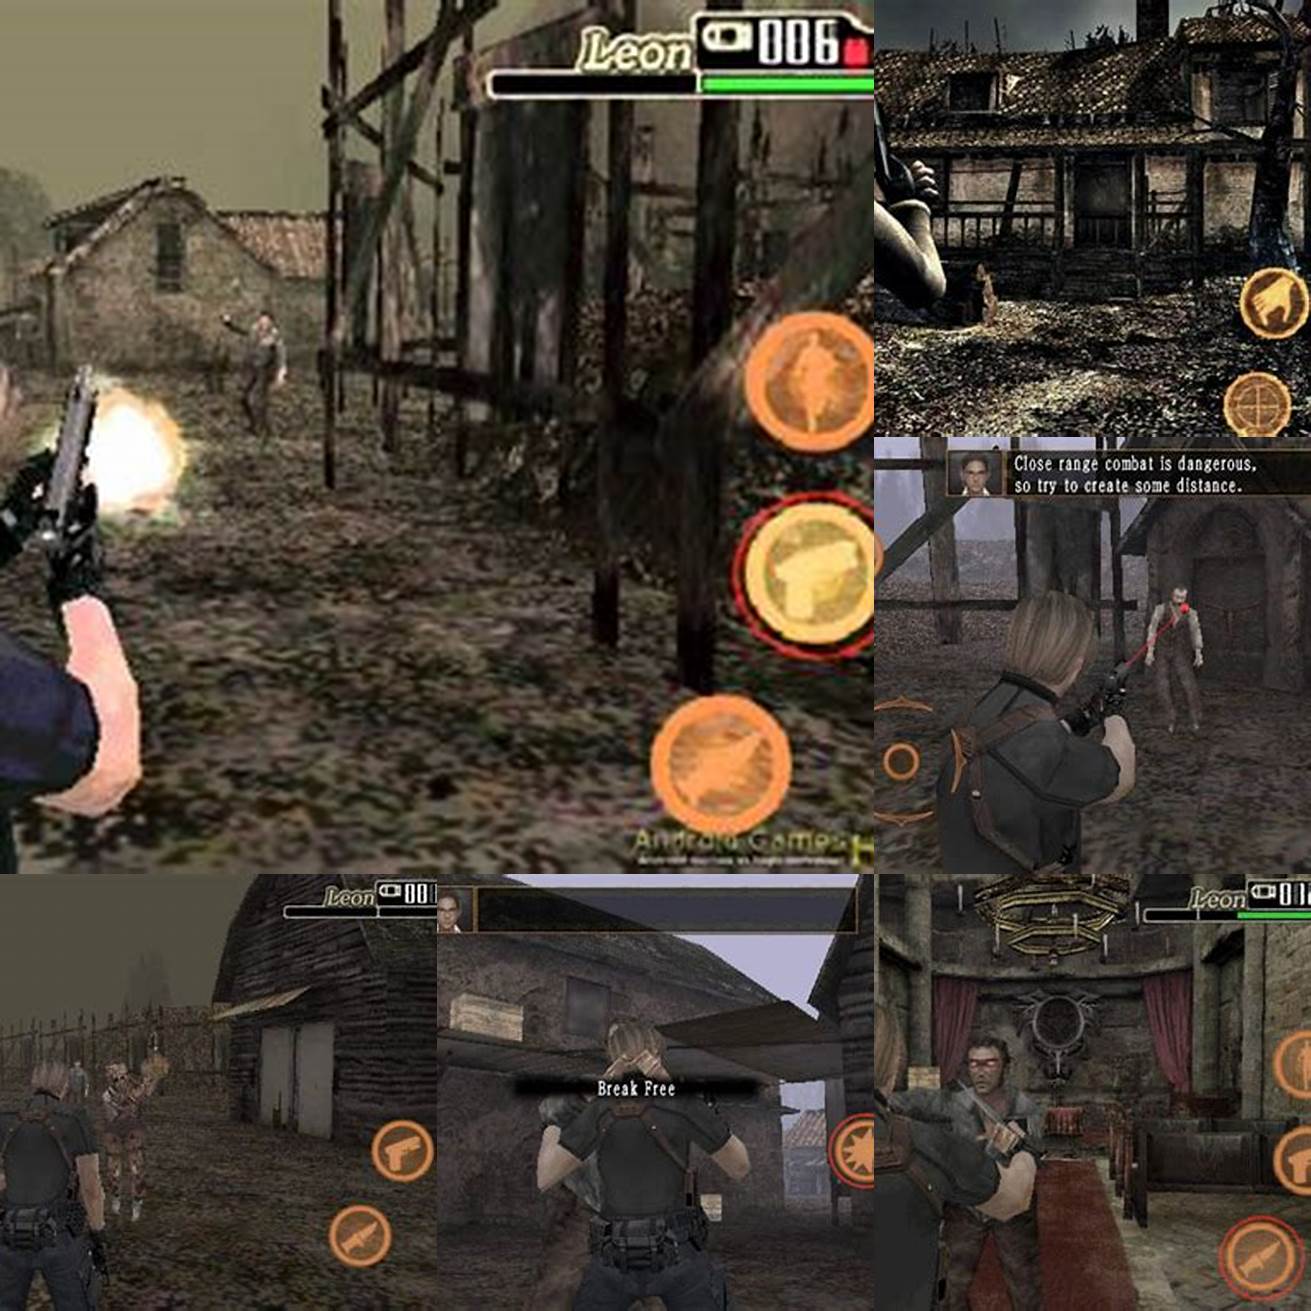 Nikmati bermain Resident Evil 4 di ponsel android kamu